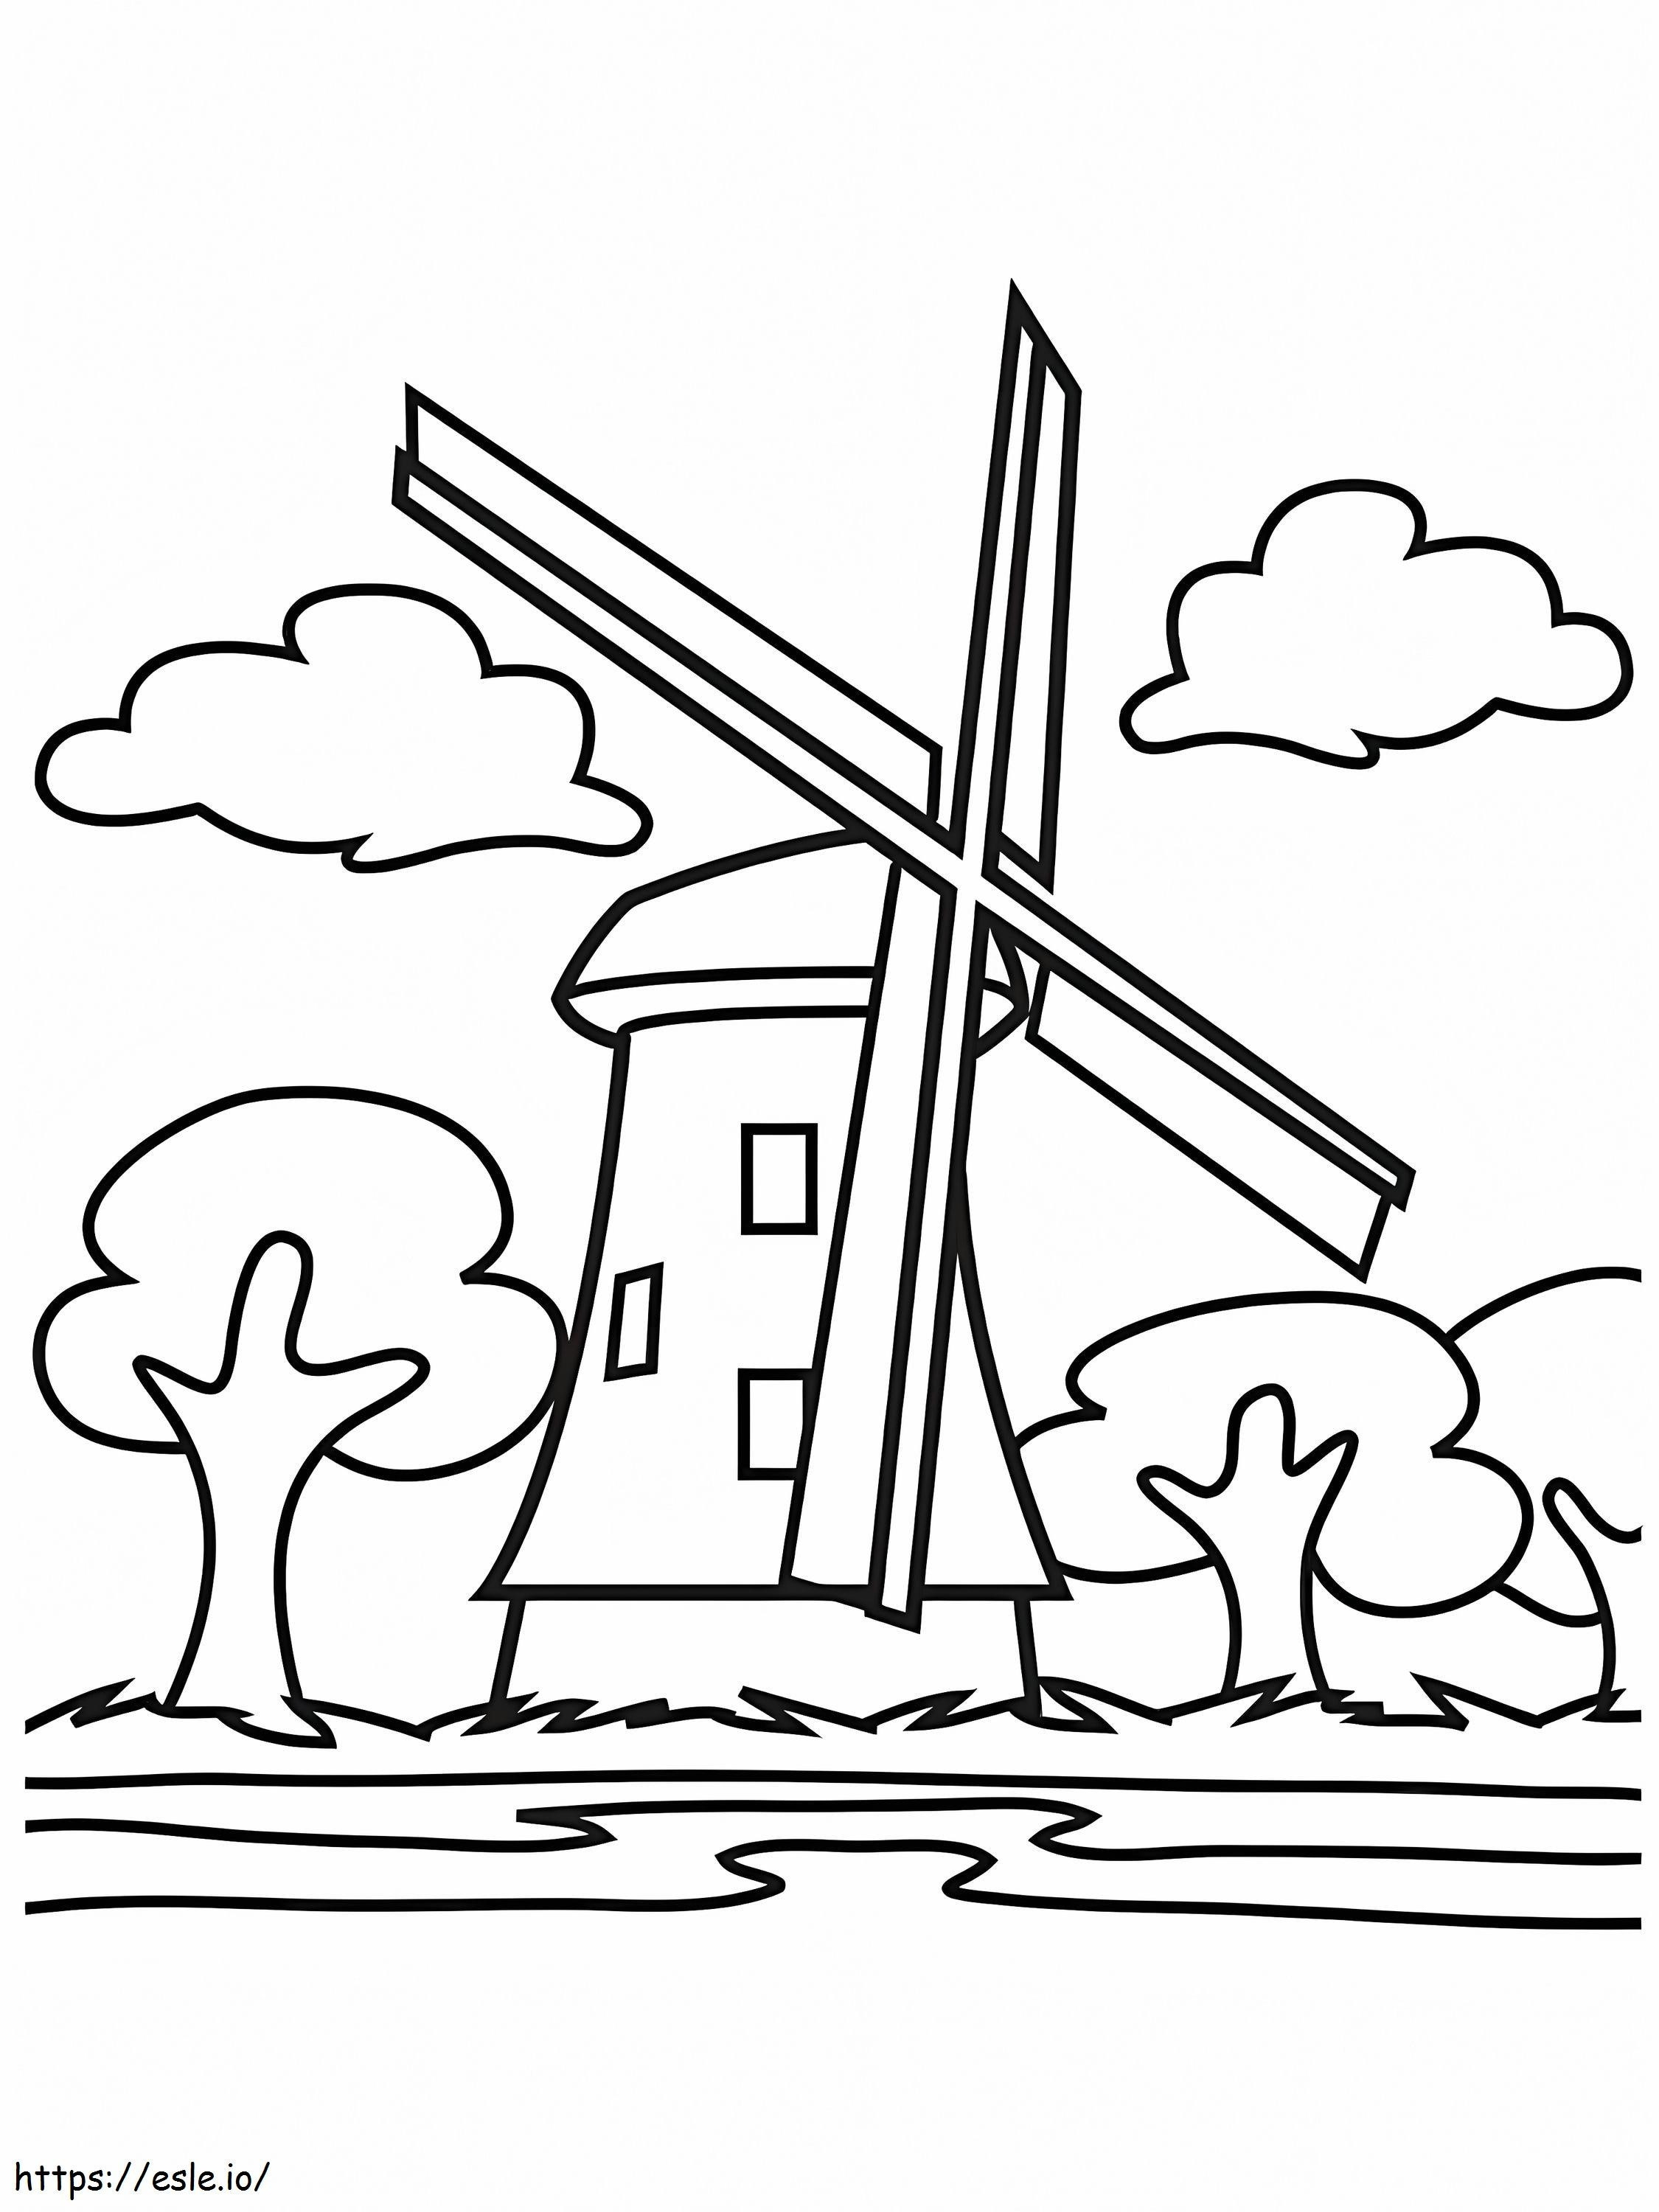 Windmühle 6 ausmalbilder